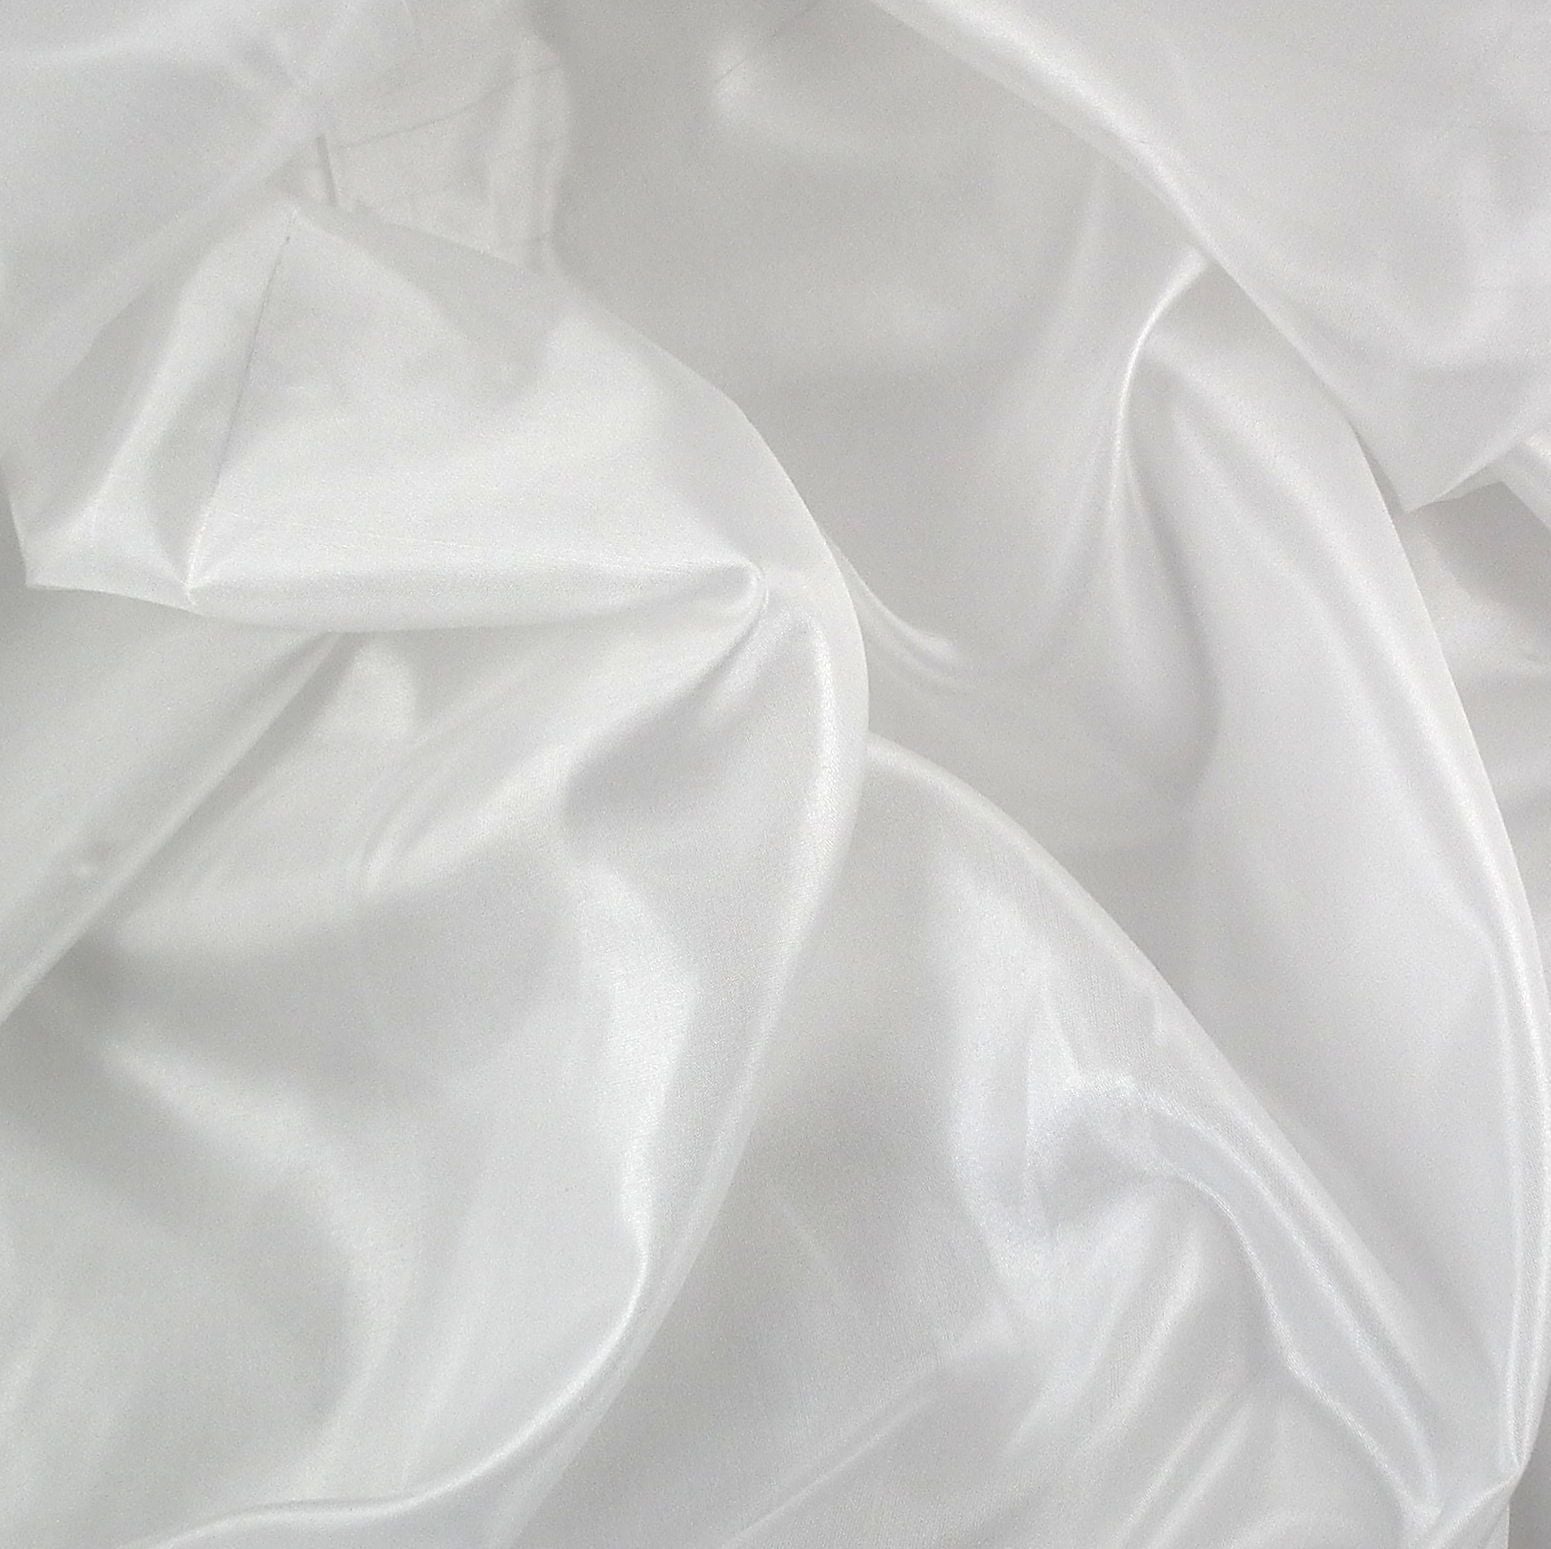 Tela elástica de seda, tela de satén sedosa por metro, forro de vestir,  decoración de manualidades, tela de seda, 55.1 in de ancho (color: azul)